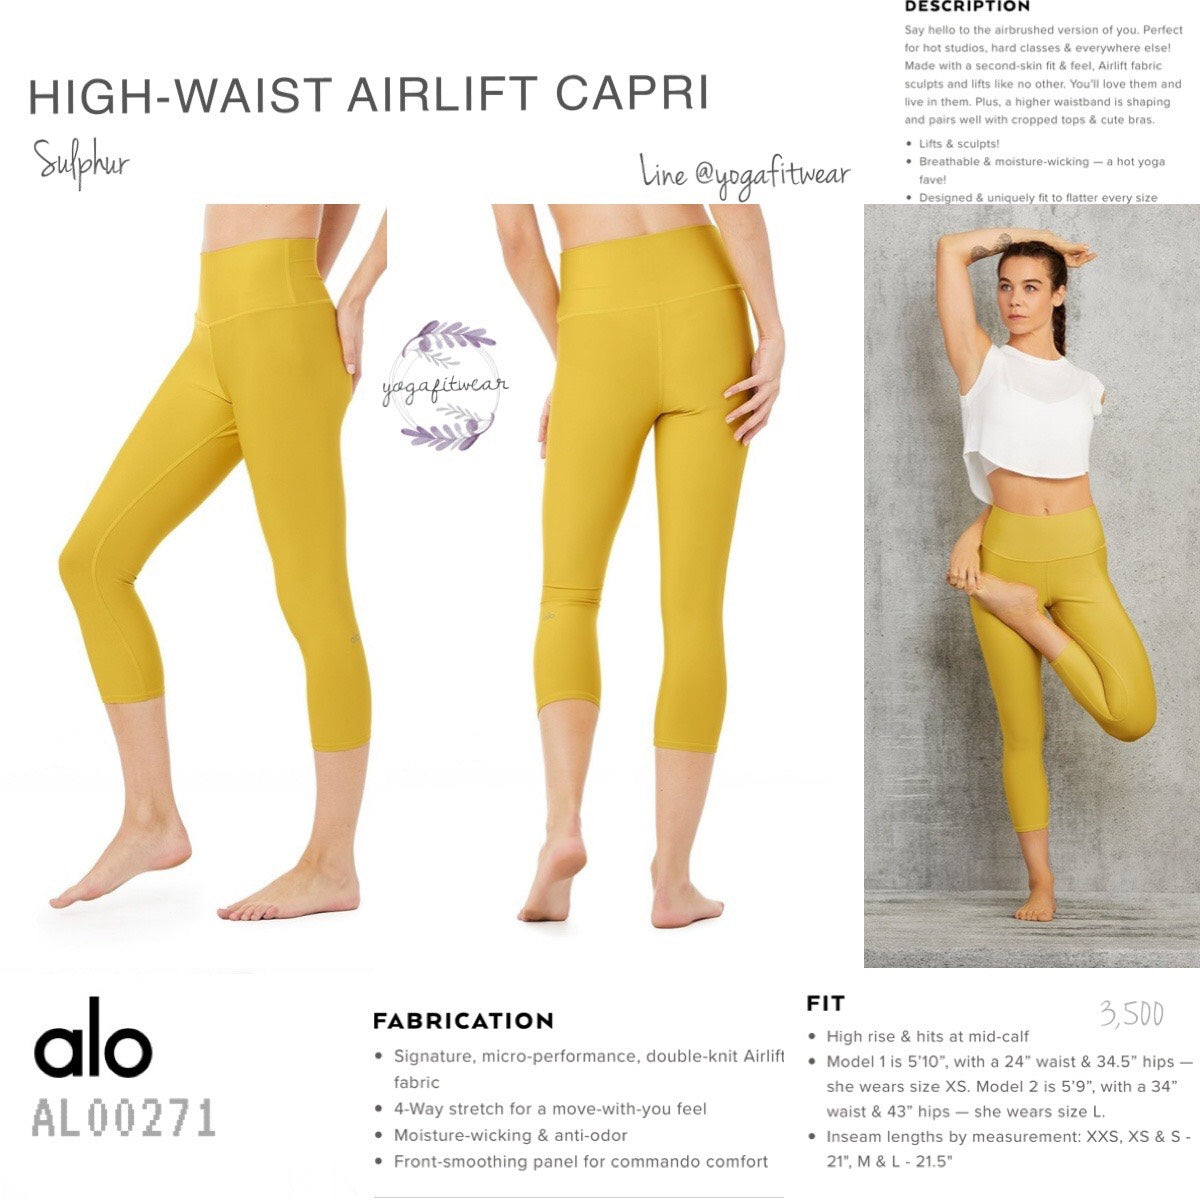 Alo Yoga High-Waist Airlift Capri - Women's